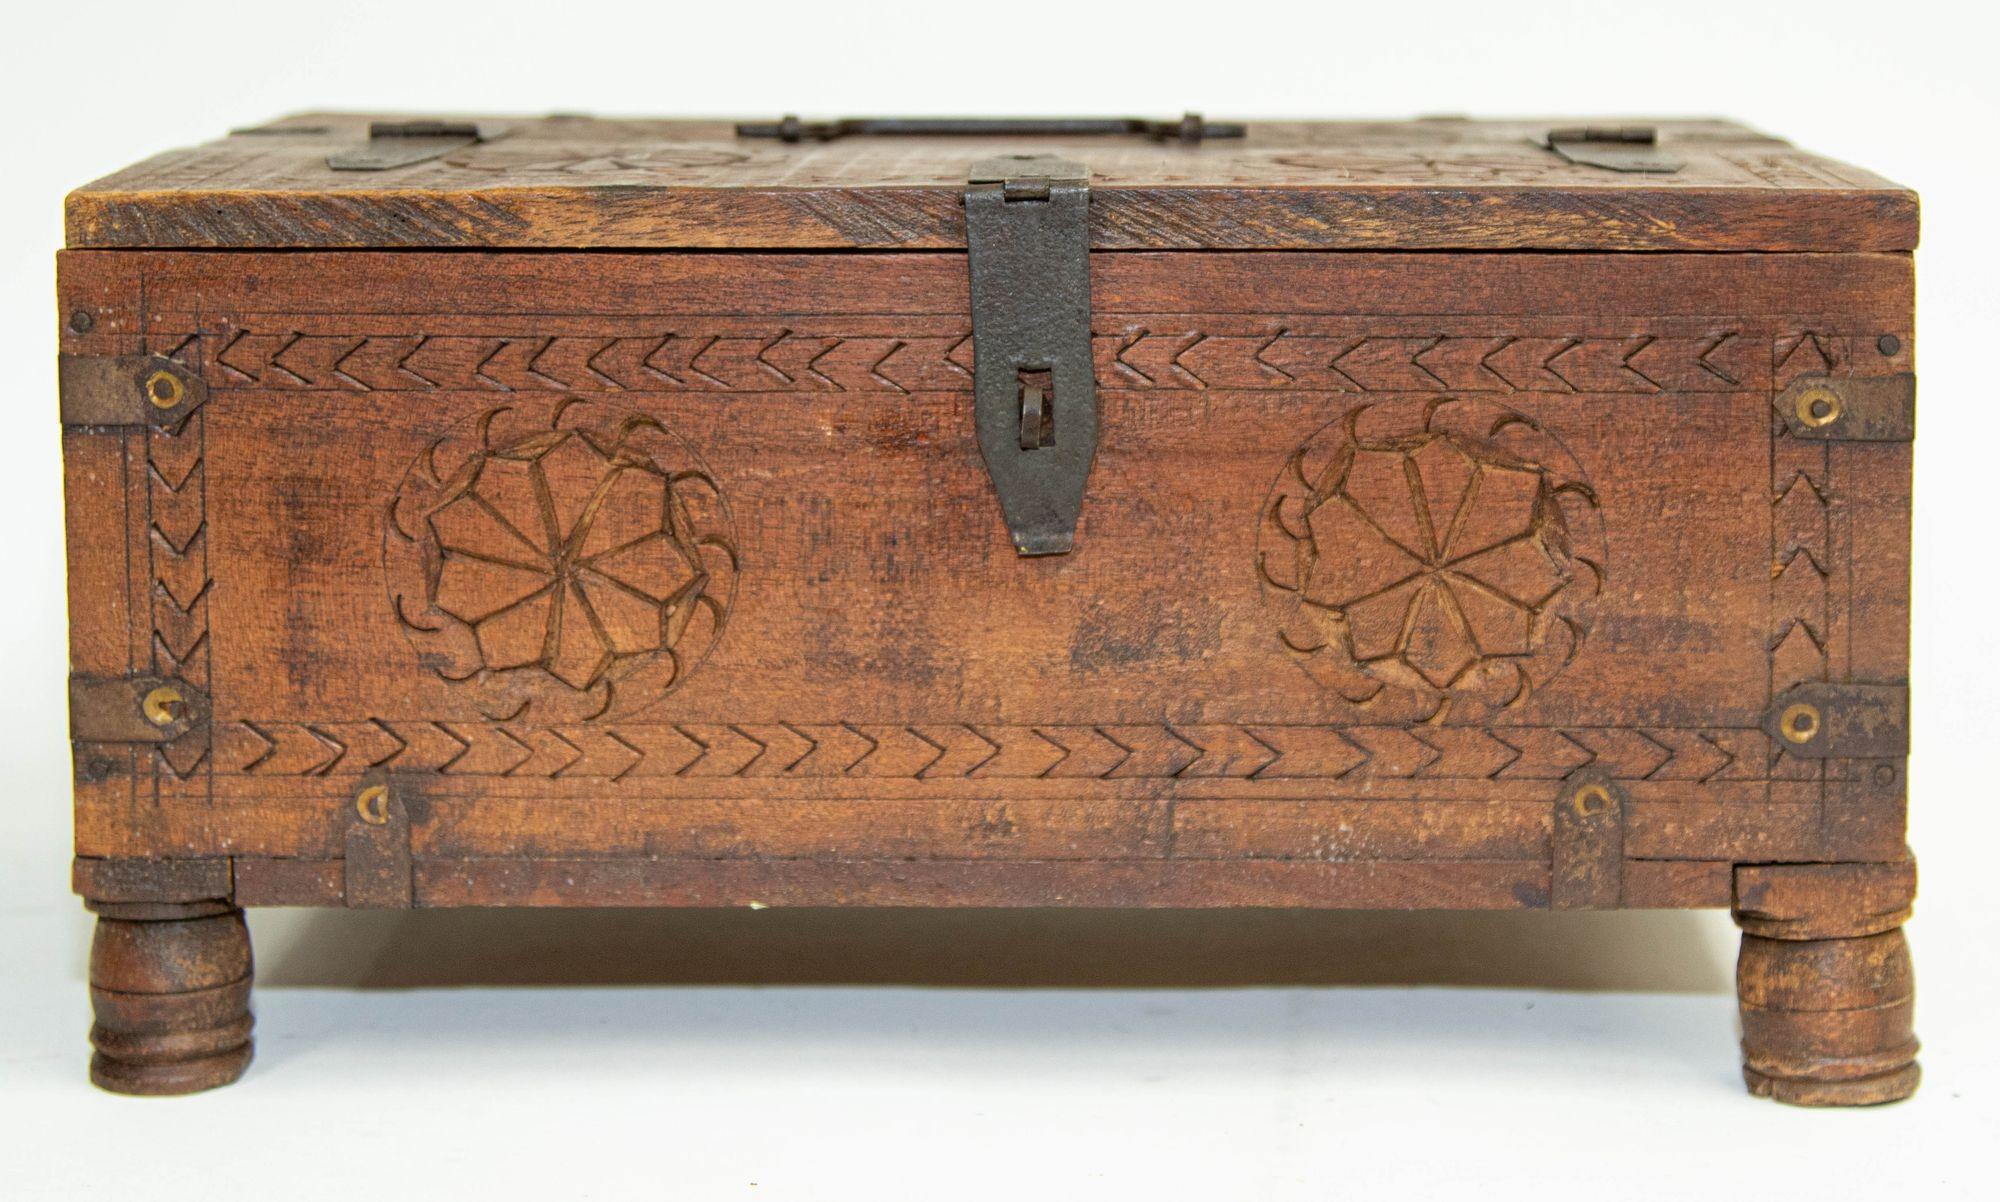 Antike Rajasthani Shekhawati Merchant's Footed Chest Box Indien 1900er Jahre.
Indische geschnitzte Holzkiste aus dem frühen 20. Jahrhundert, die von Kaufleuten in ihren Geschäften und auch in jedem Haus zur Aufbewahrung von Geld und Schmuck oder